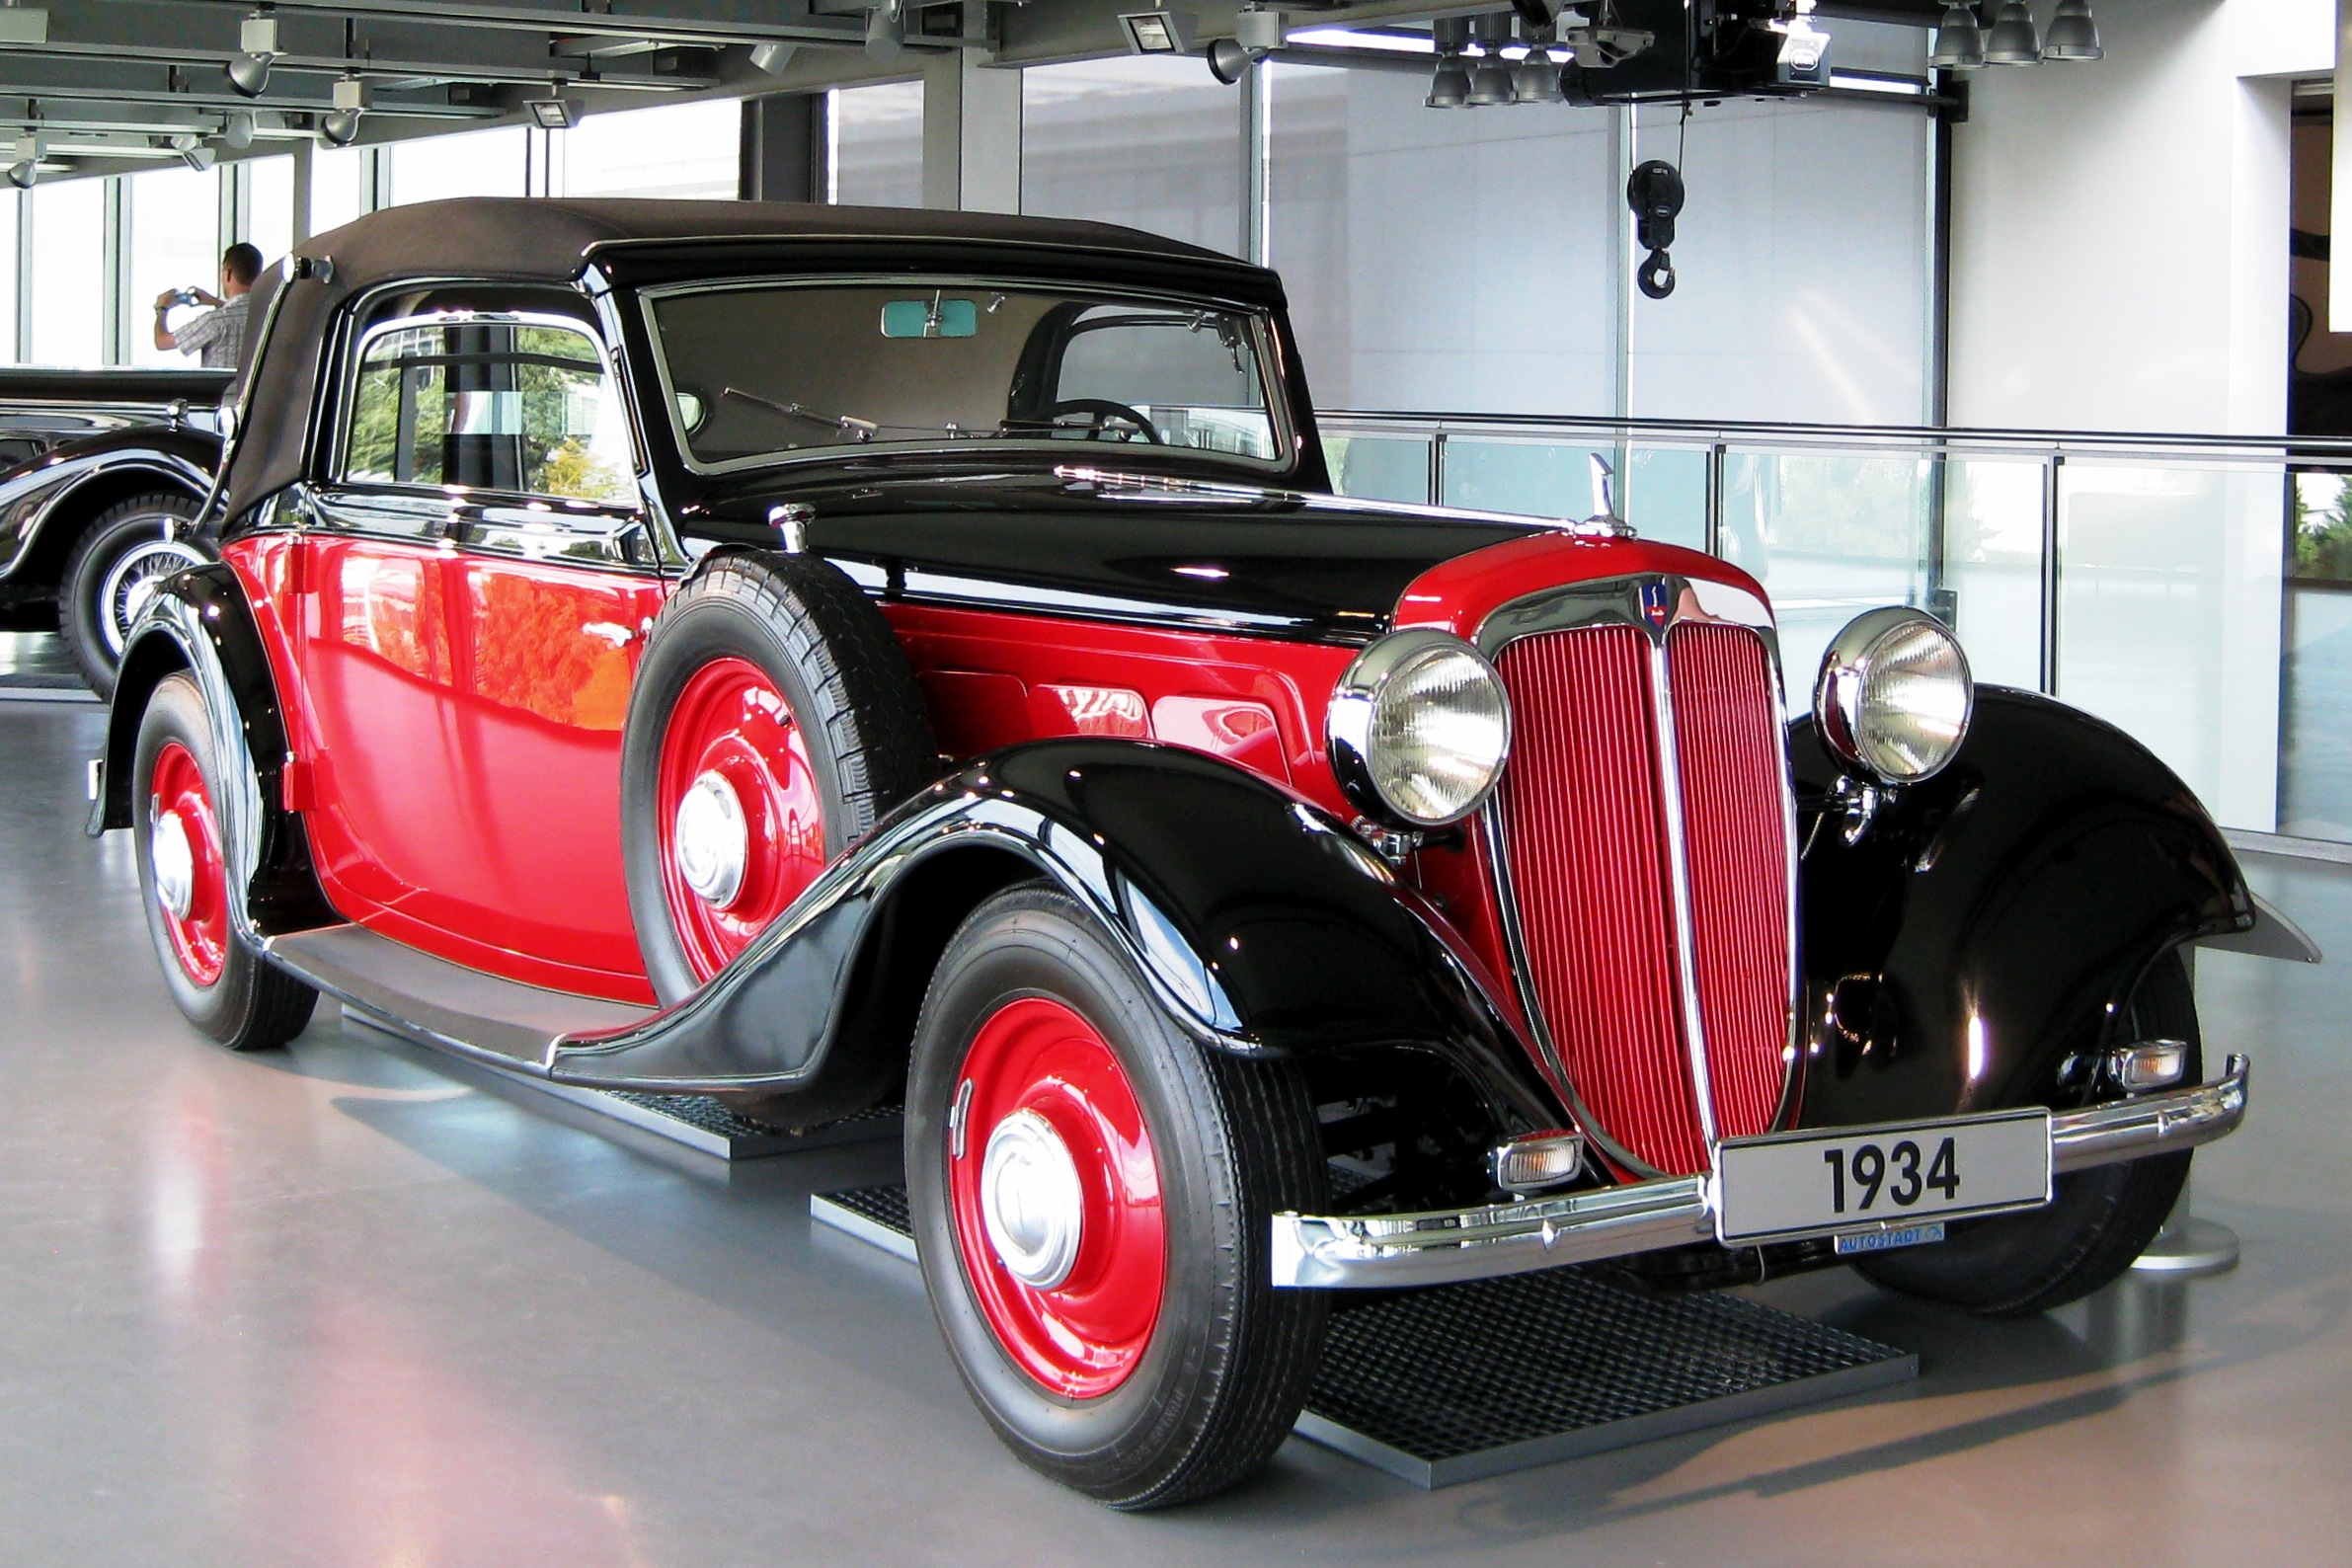 Auto Union -Audi UW220 - 1934